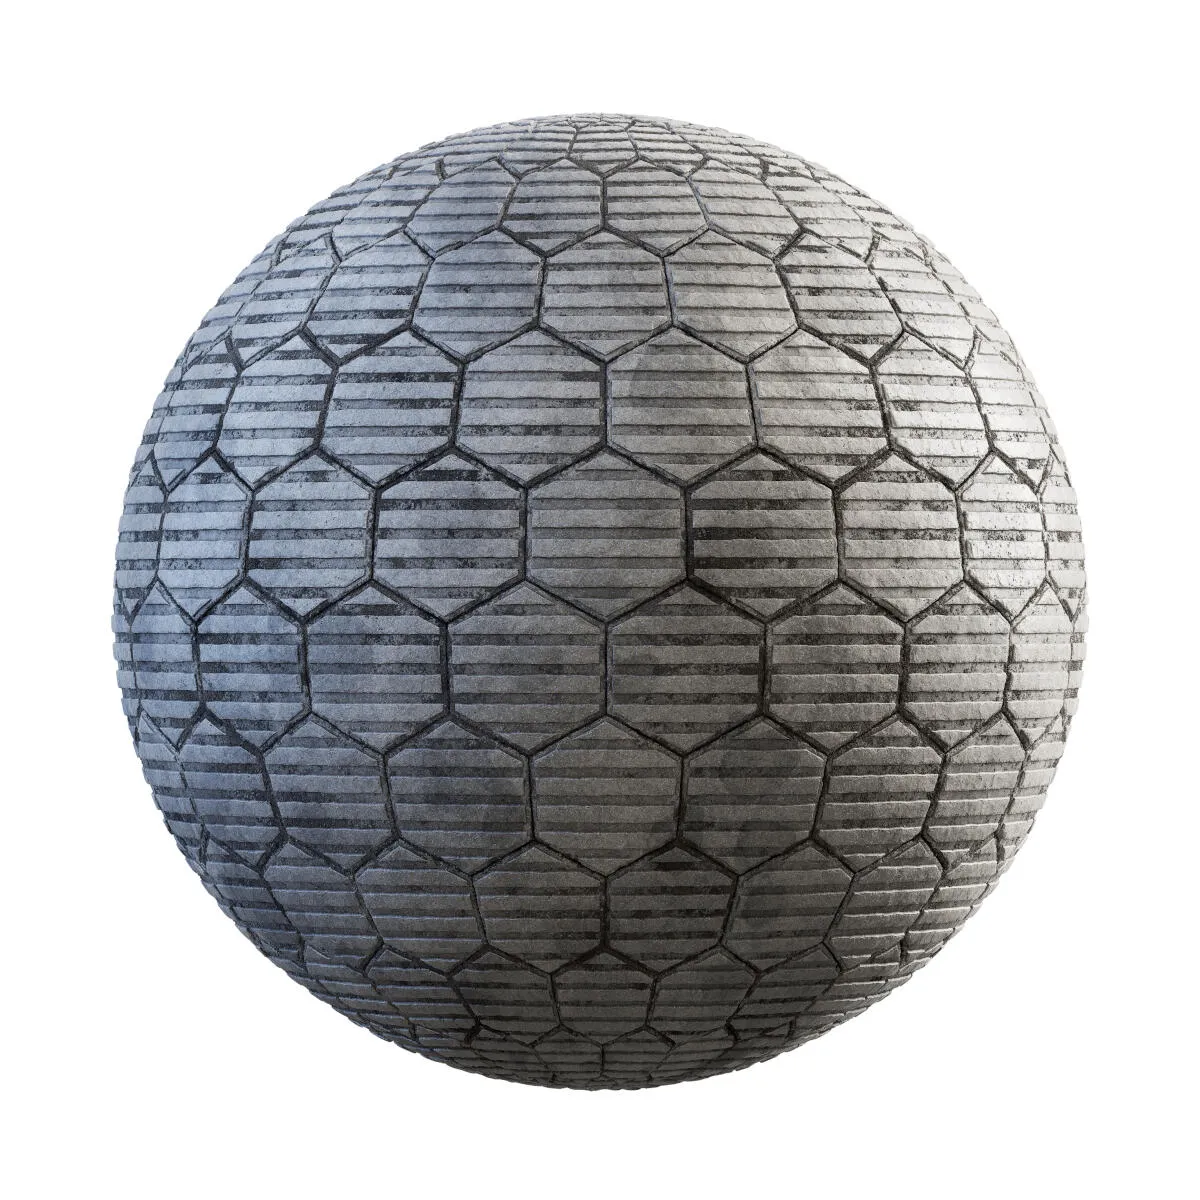 PBR Textures Volume 34 – Pavements – 4K – grey_hexagon_concrete_pavement_36_98